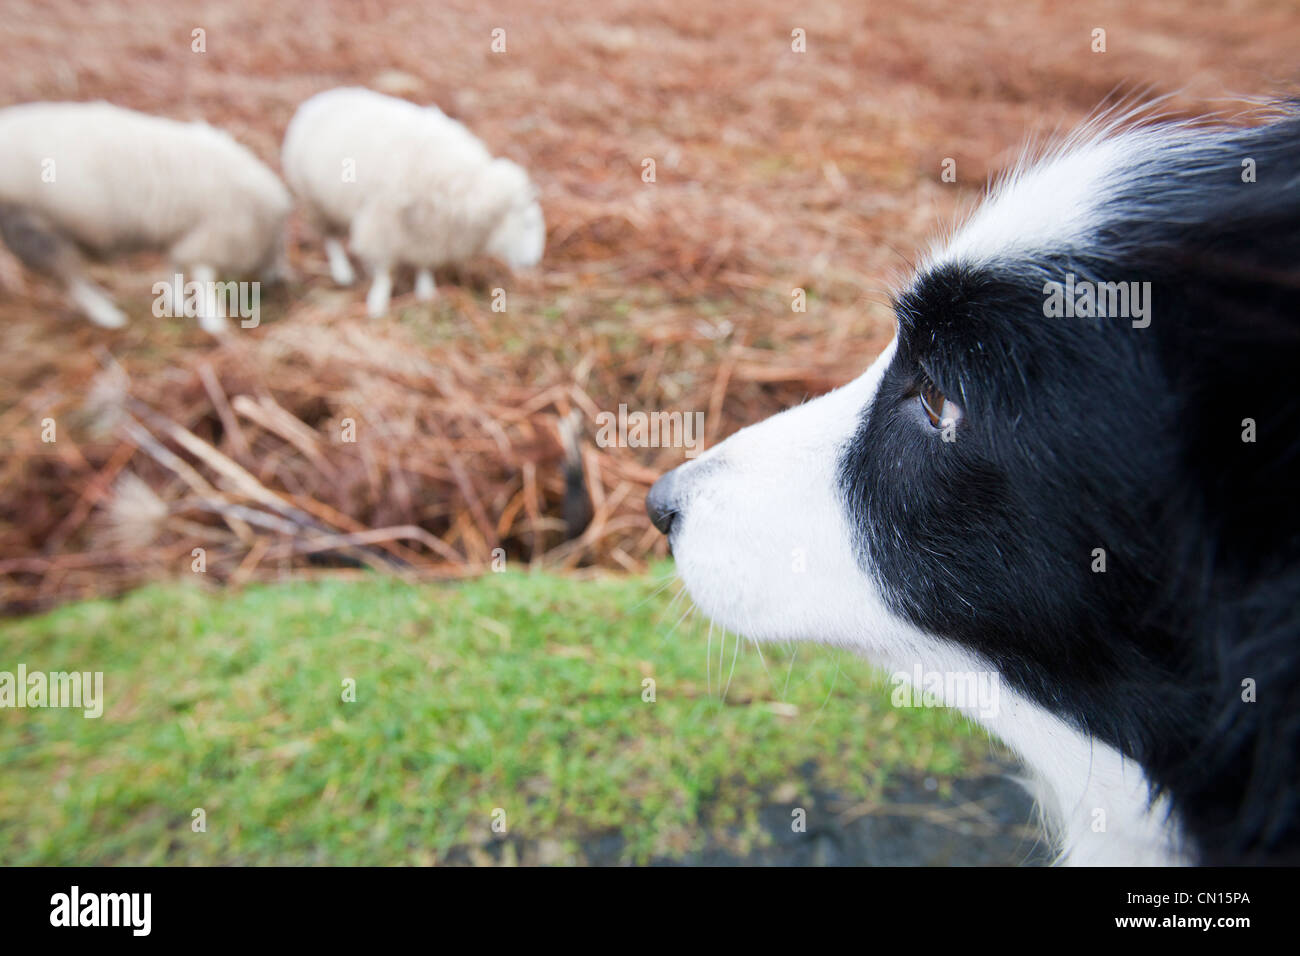 Deux moutons à Portnalong, Isle of Skye, Scotland, UK, d'être surveillés de près par un animal de border collie. Banque D'Images